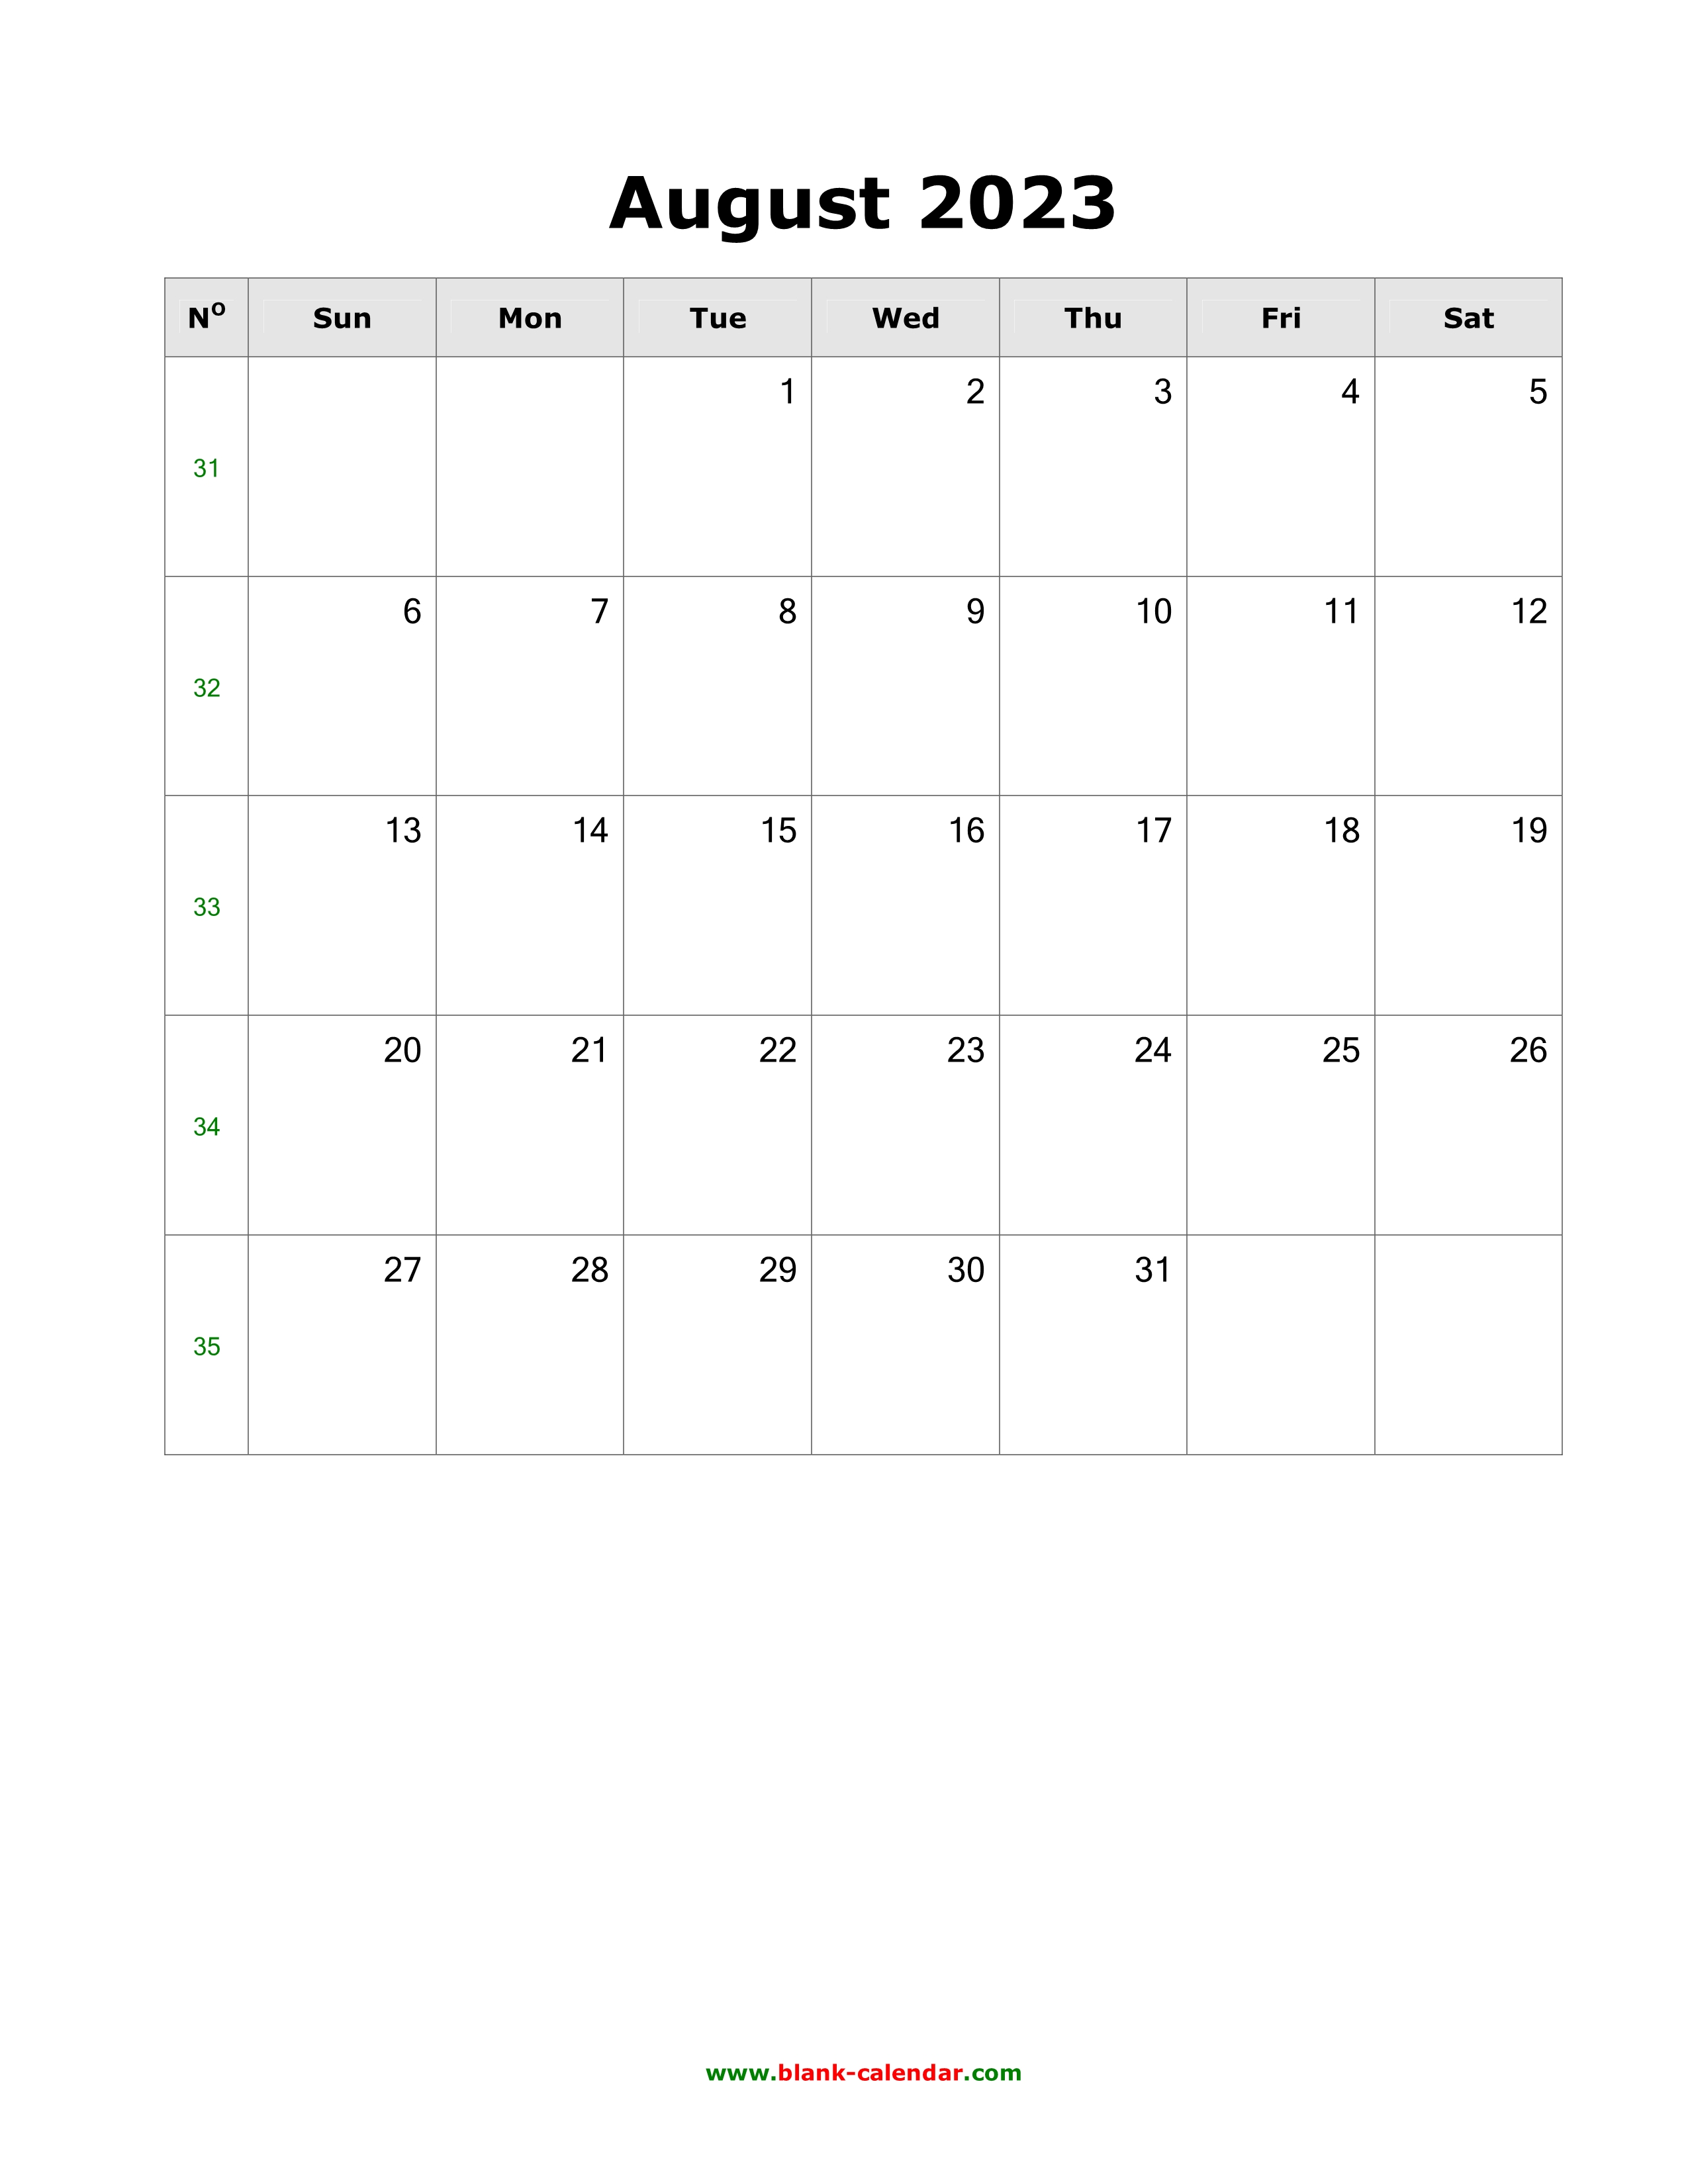 August 2023 Calendar Us Holidays Get Calendar 2023 Update